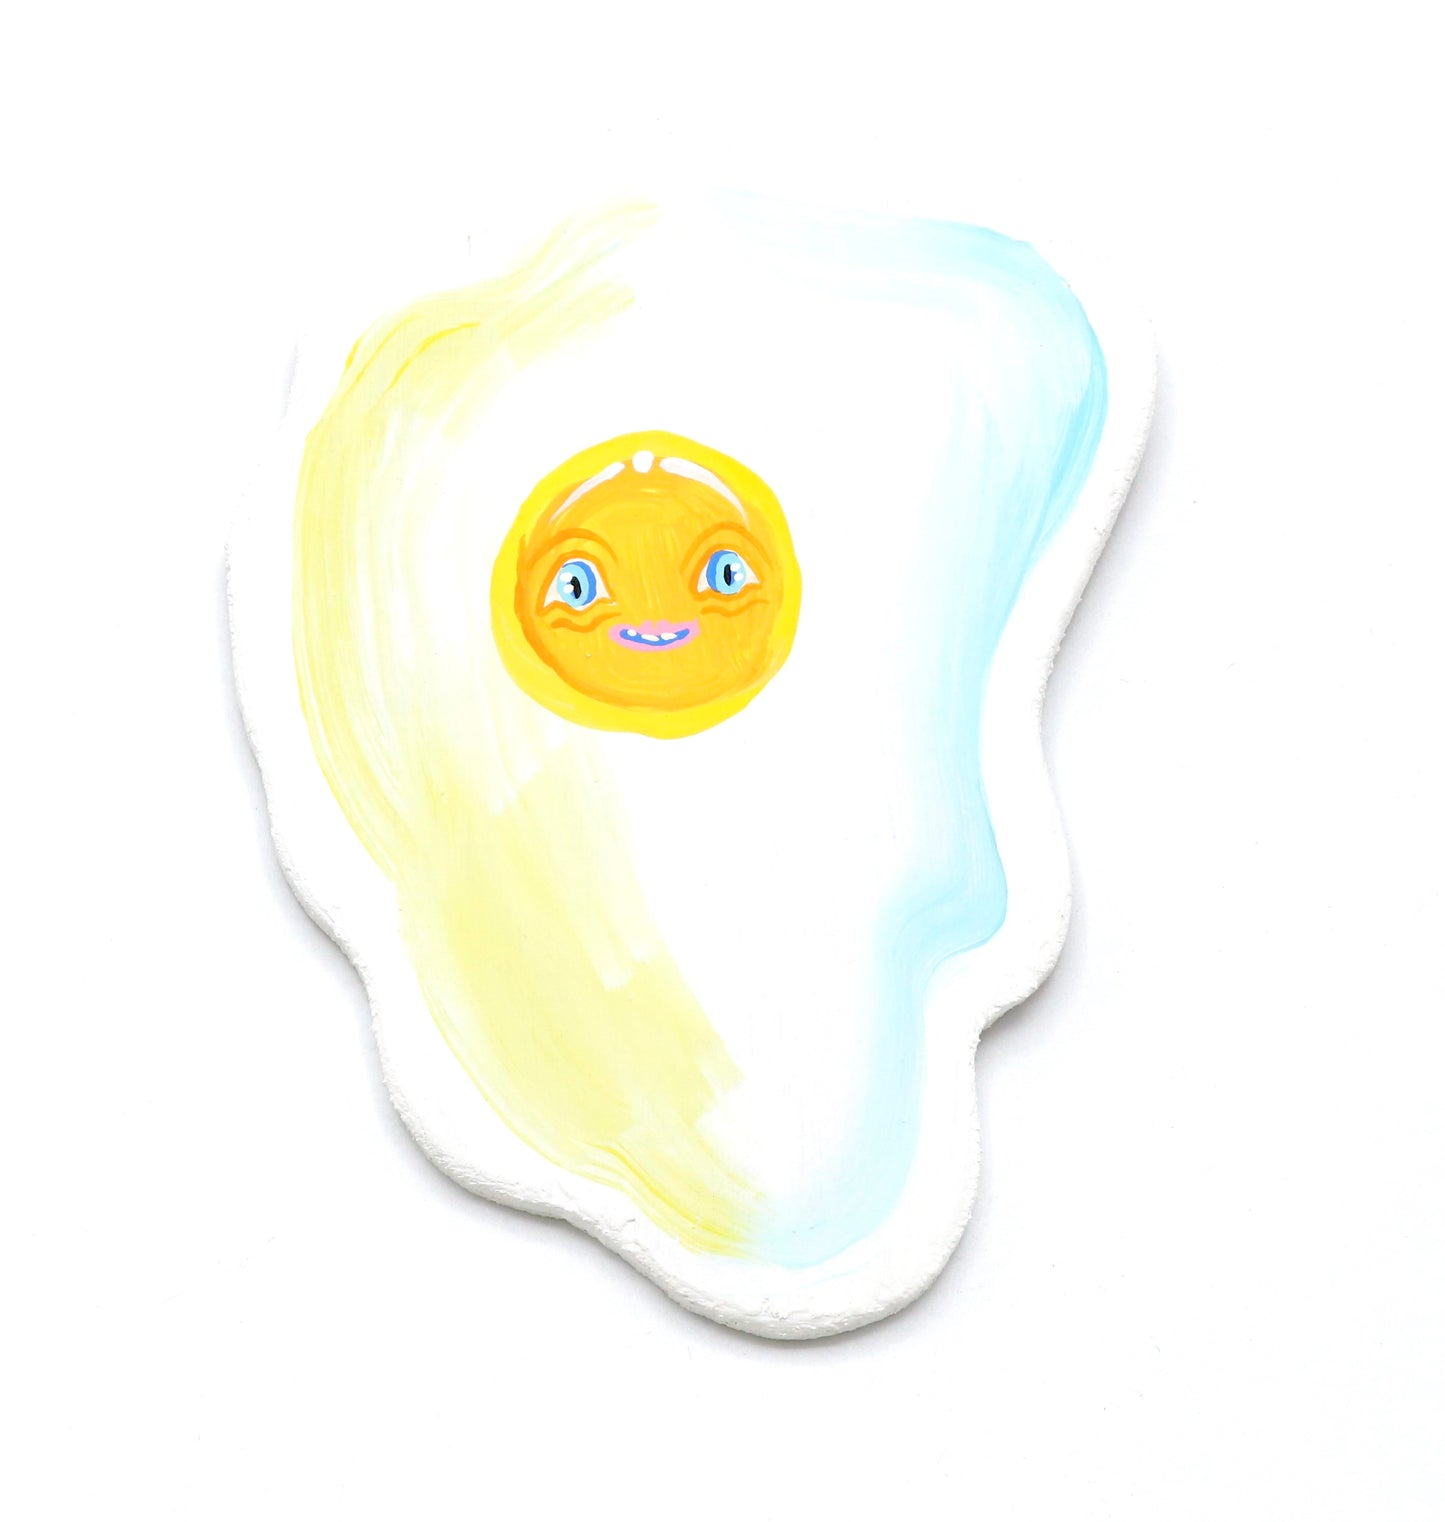 Egg - Original Artwork